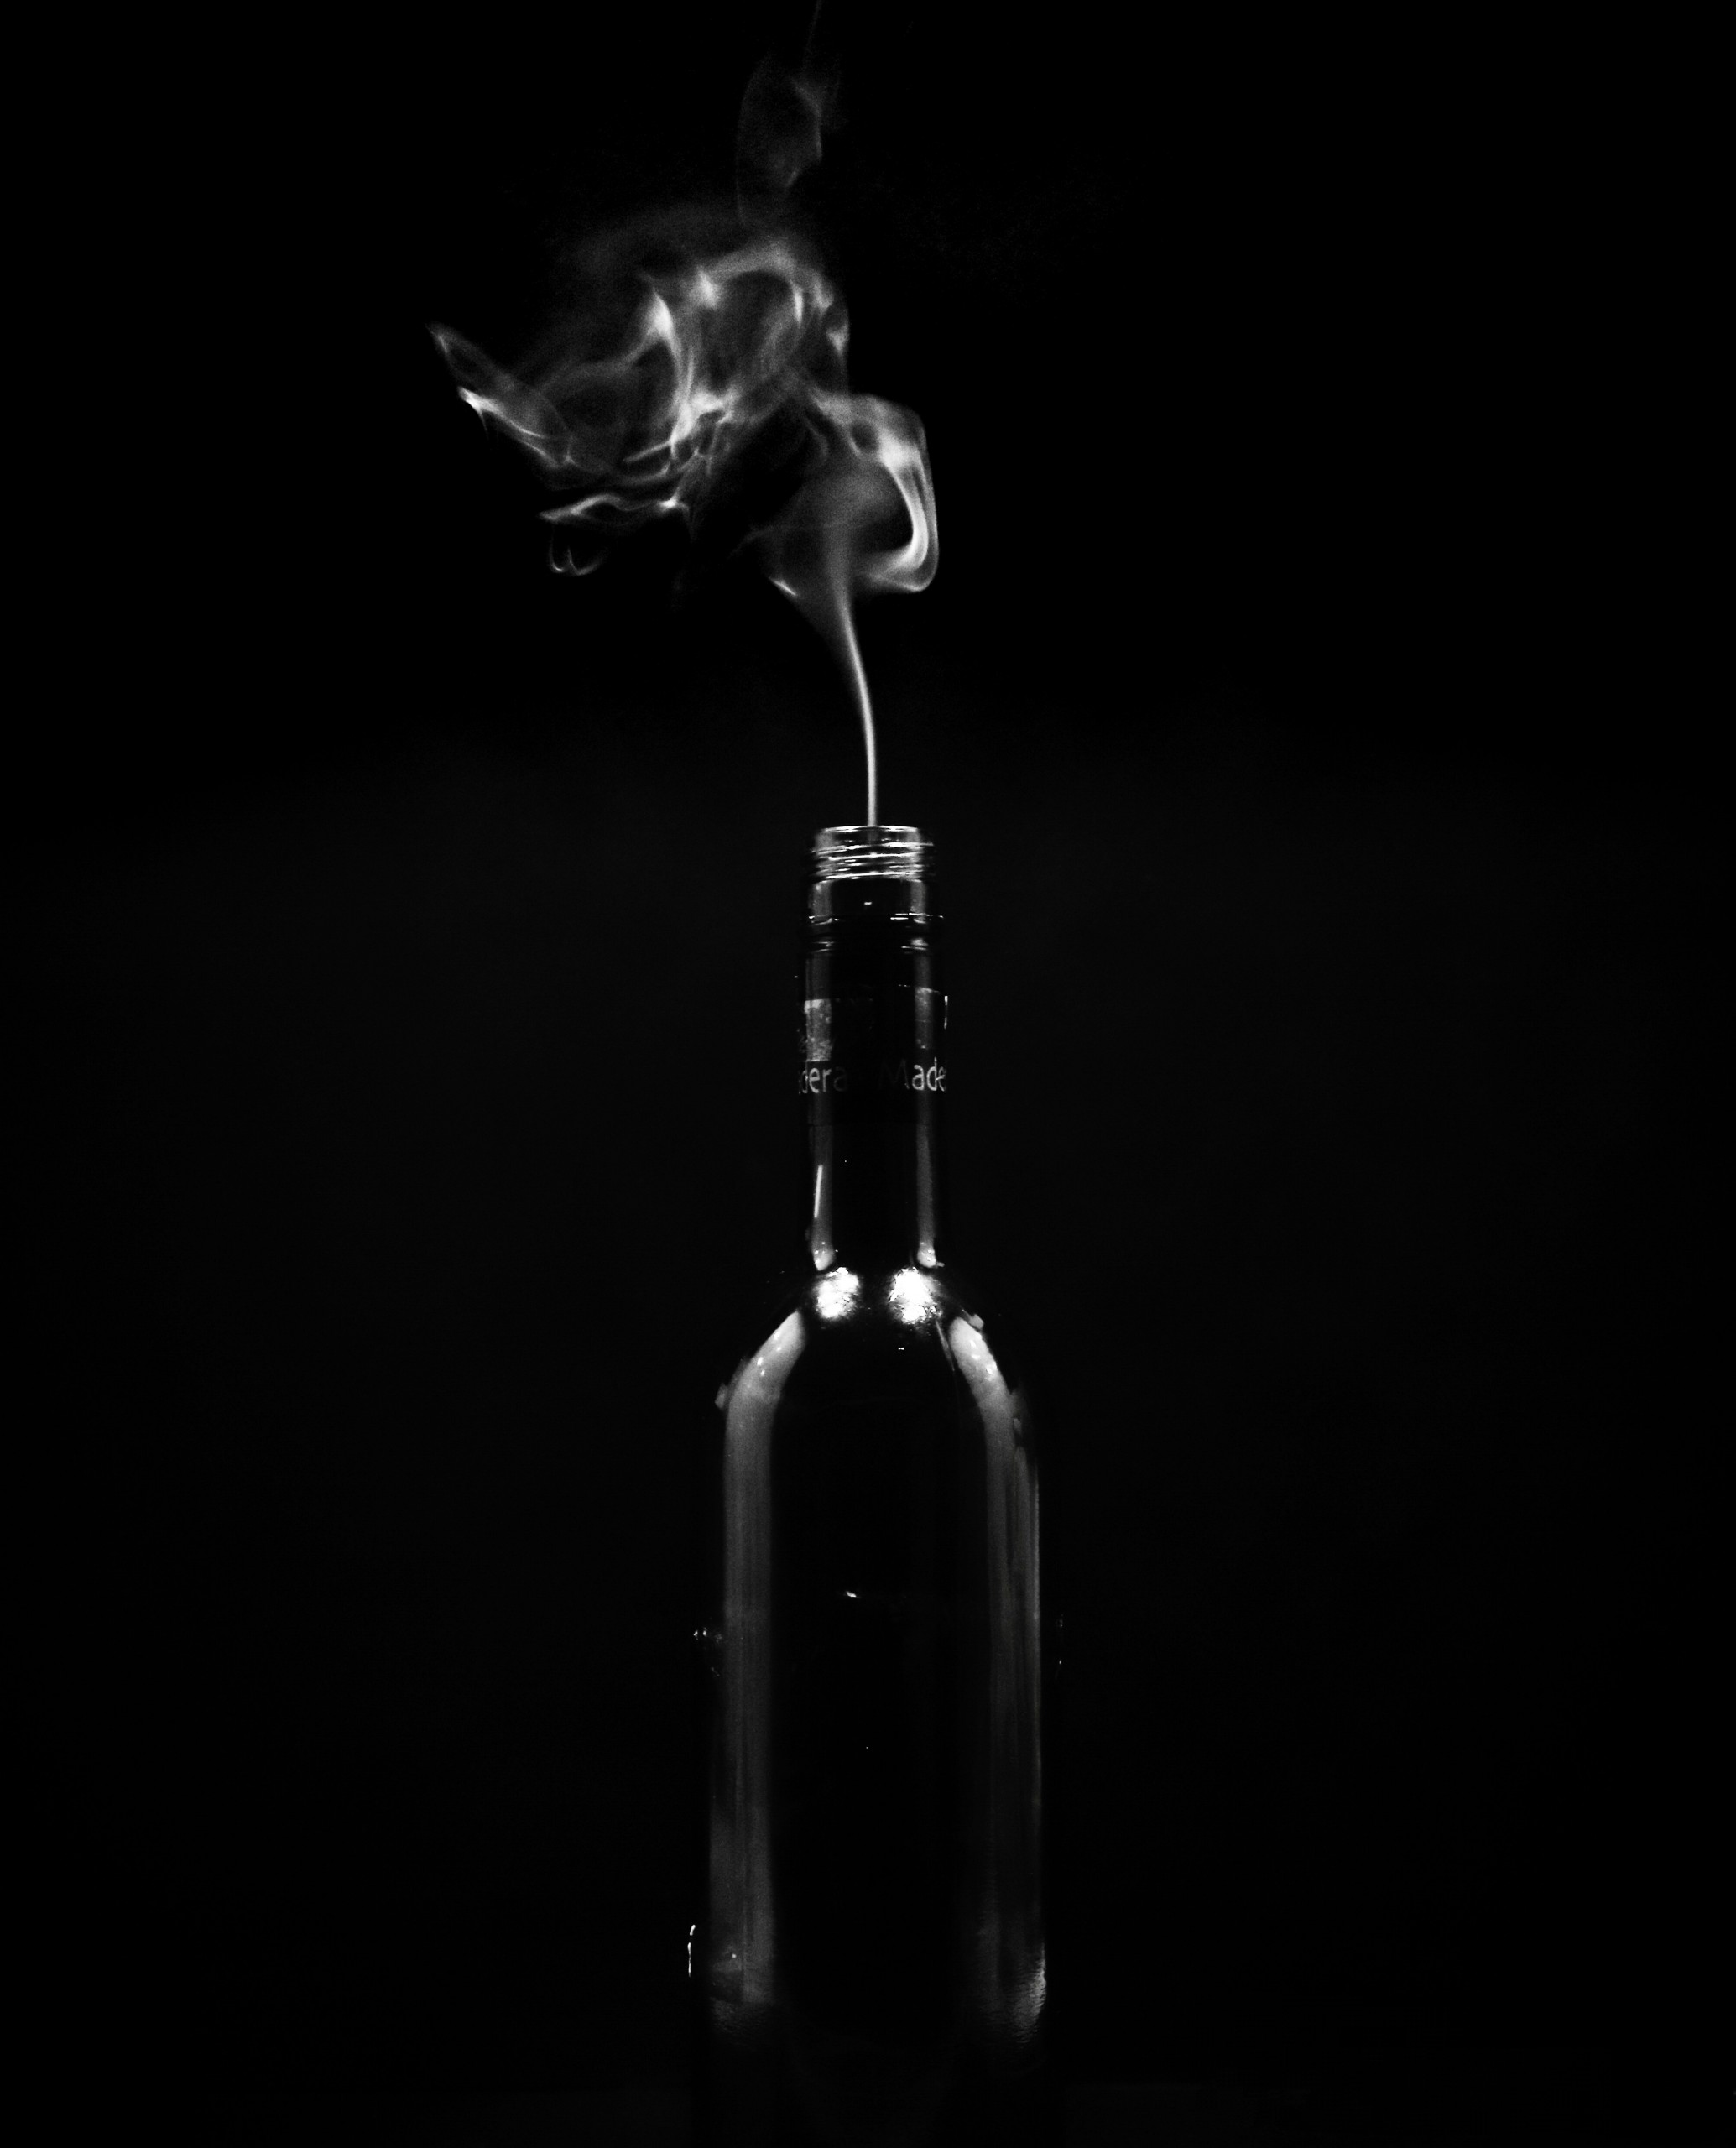 smoke photography and editing